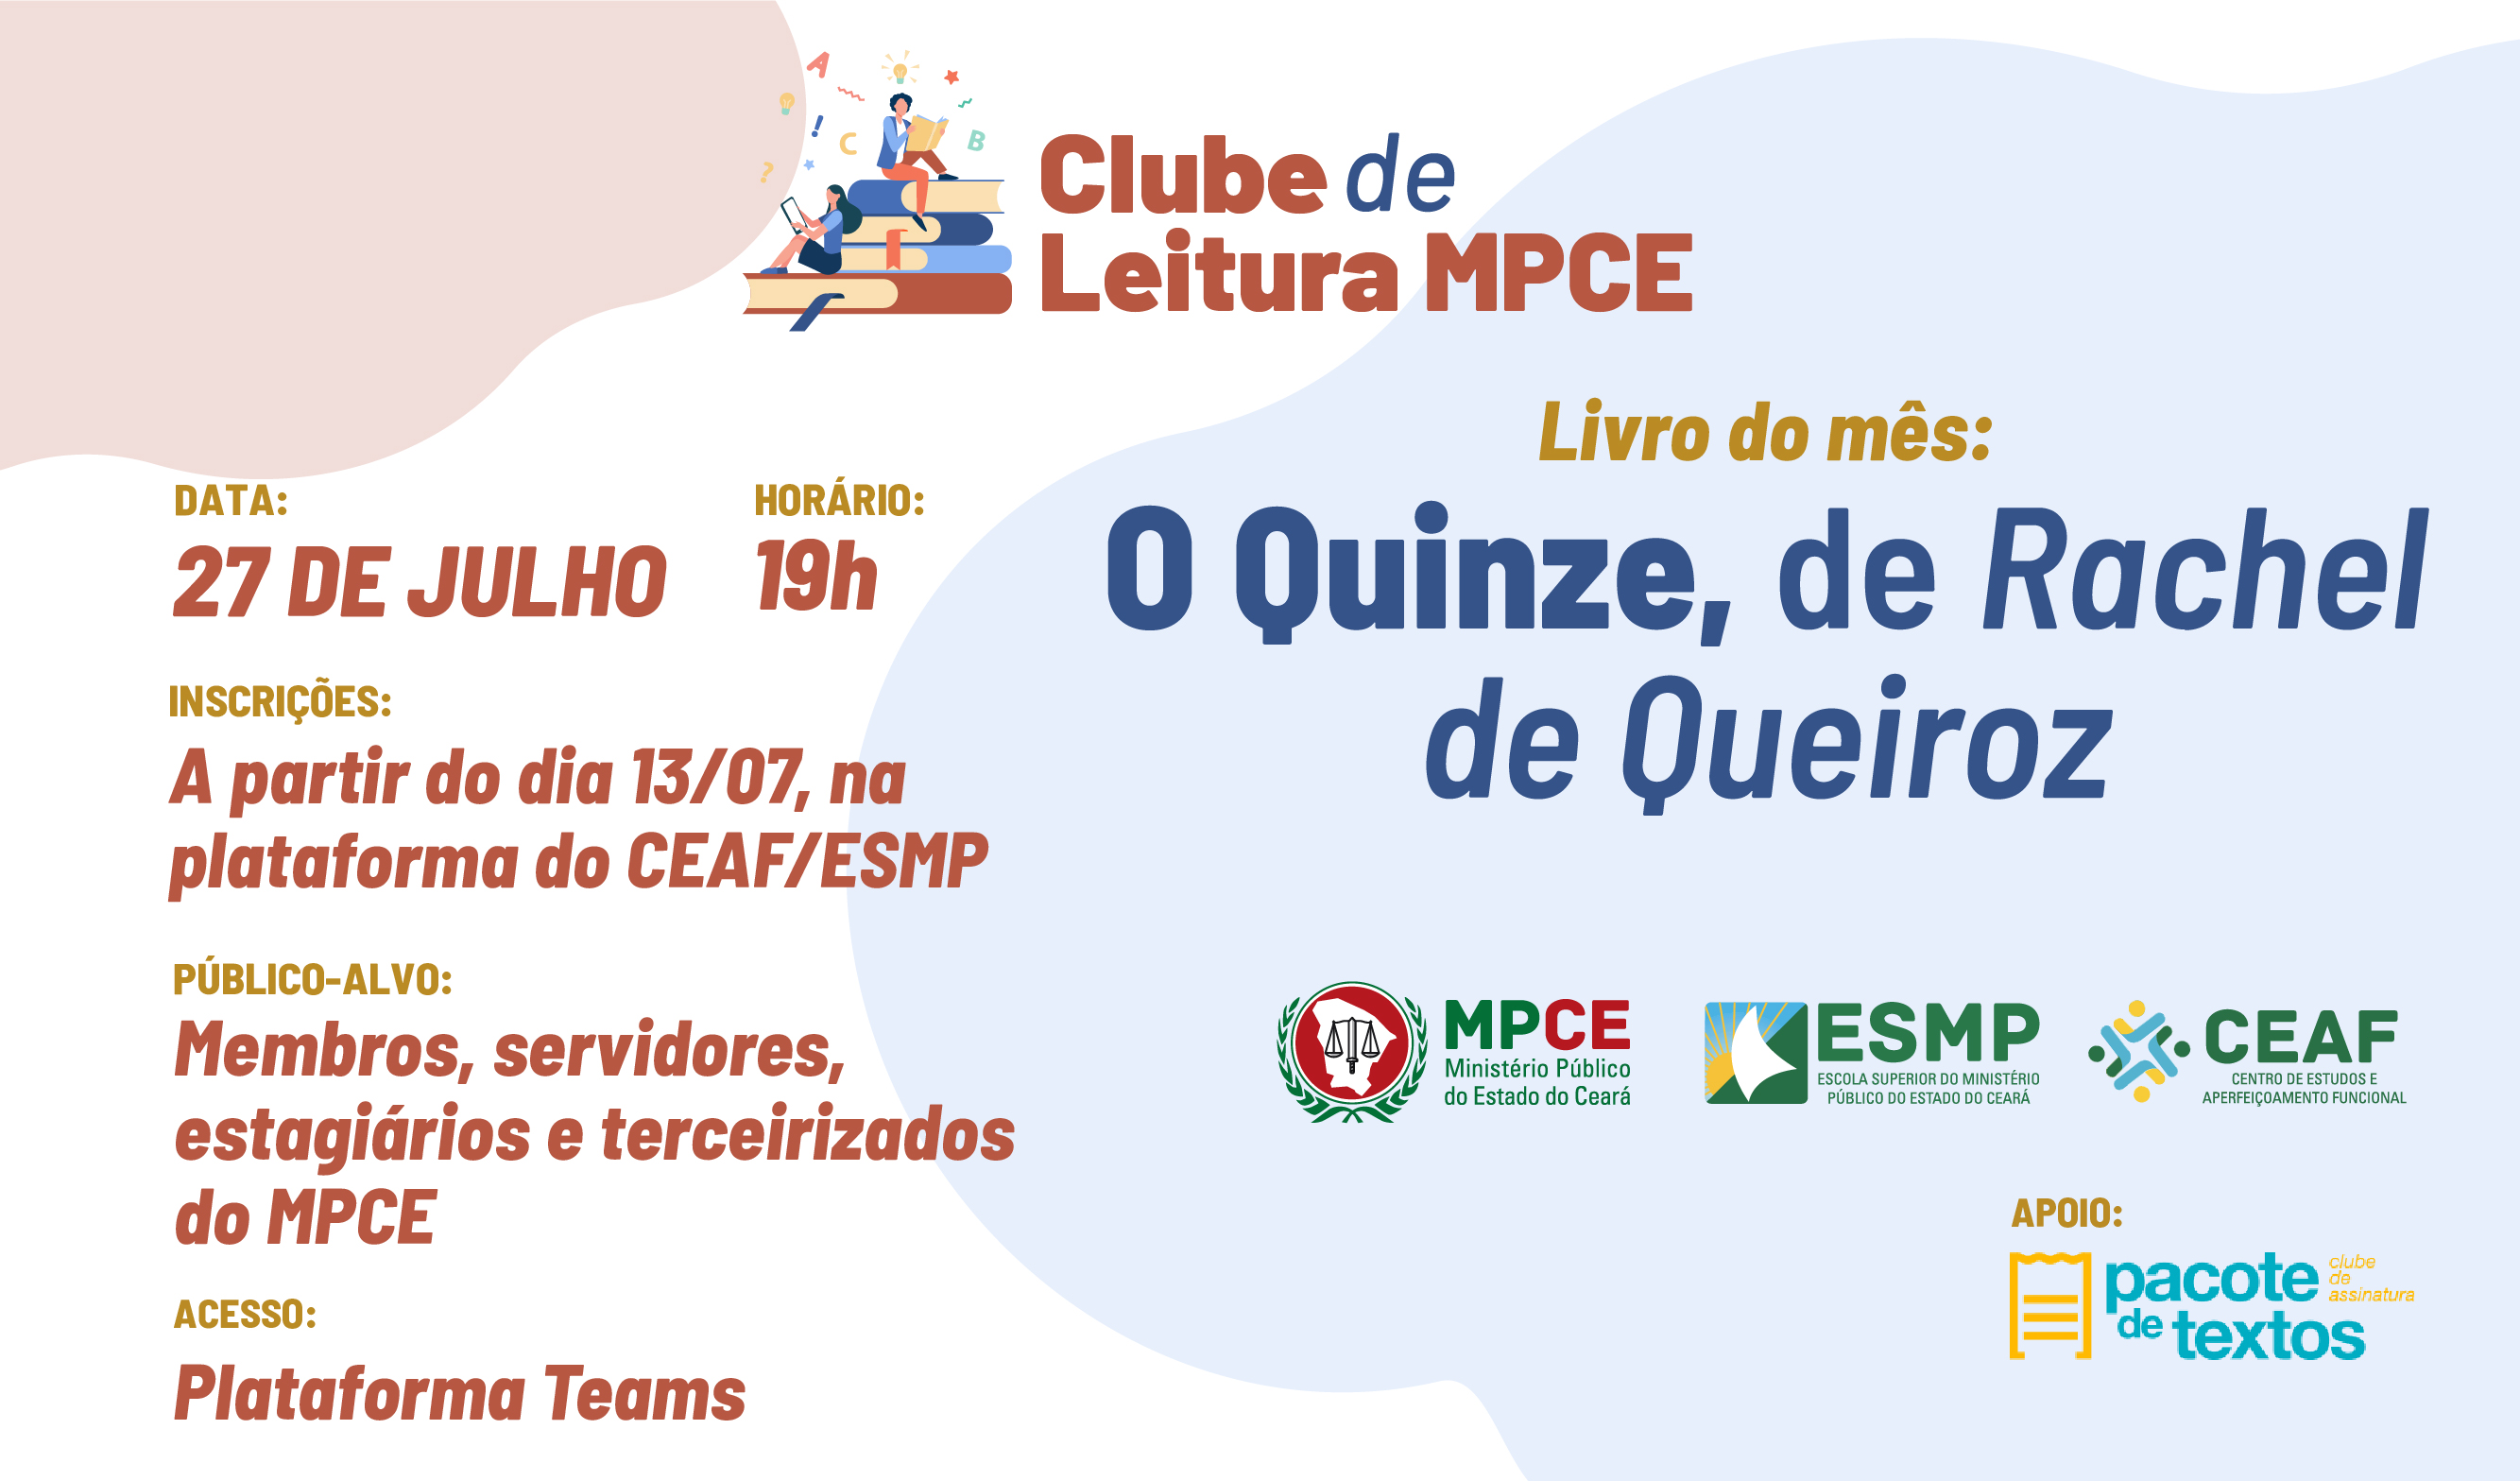 CLUBE DE LEITURA DO MPCE - O QUINZE - RACHEL DE QUEIROZ - Nº 1